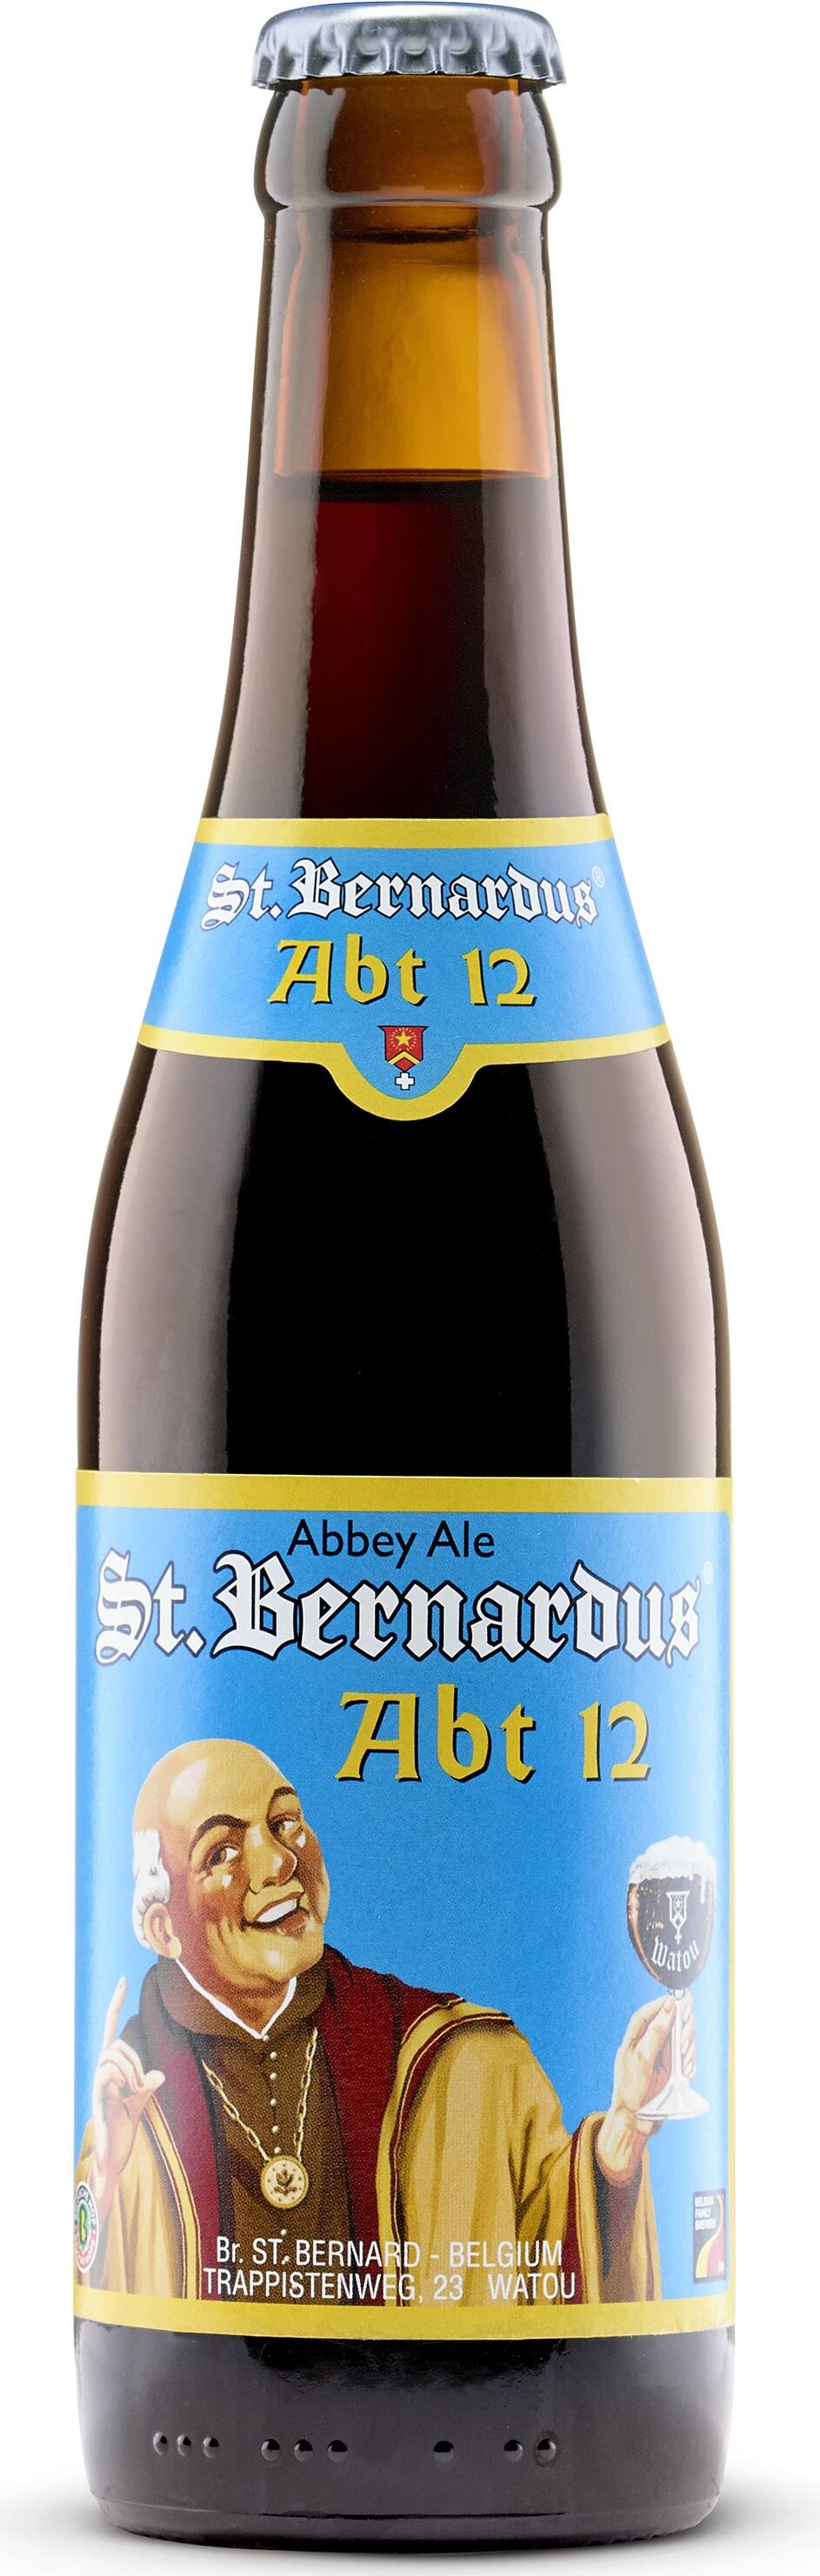 St. Bernardus ABT 12 Quadrupel Beer